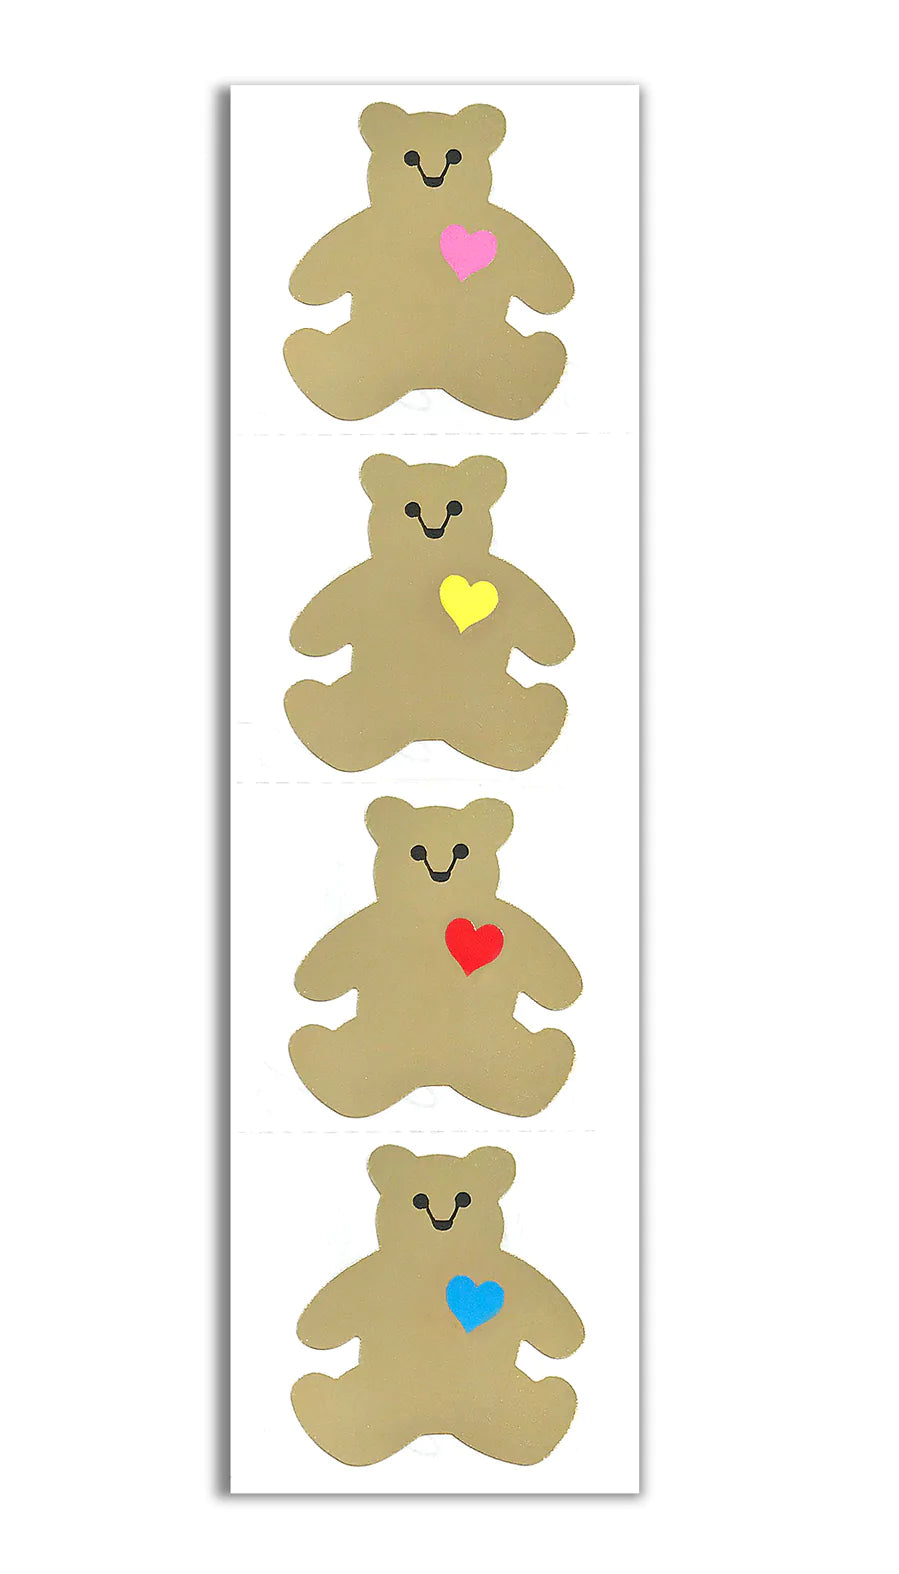 Bear Alpha Sticker - Bear Alpha - Discover & Share GIFs